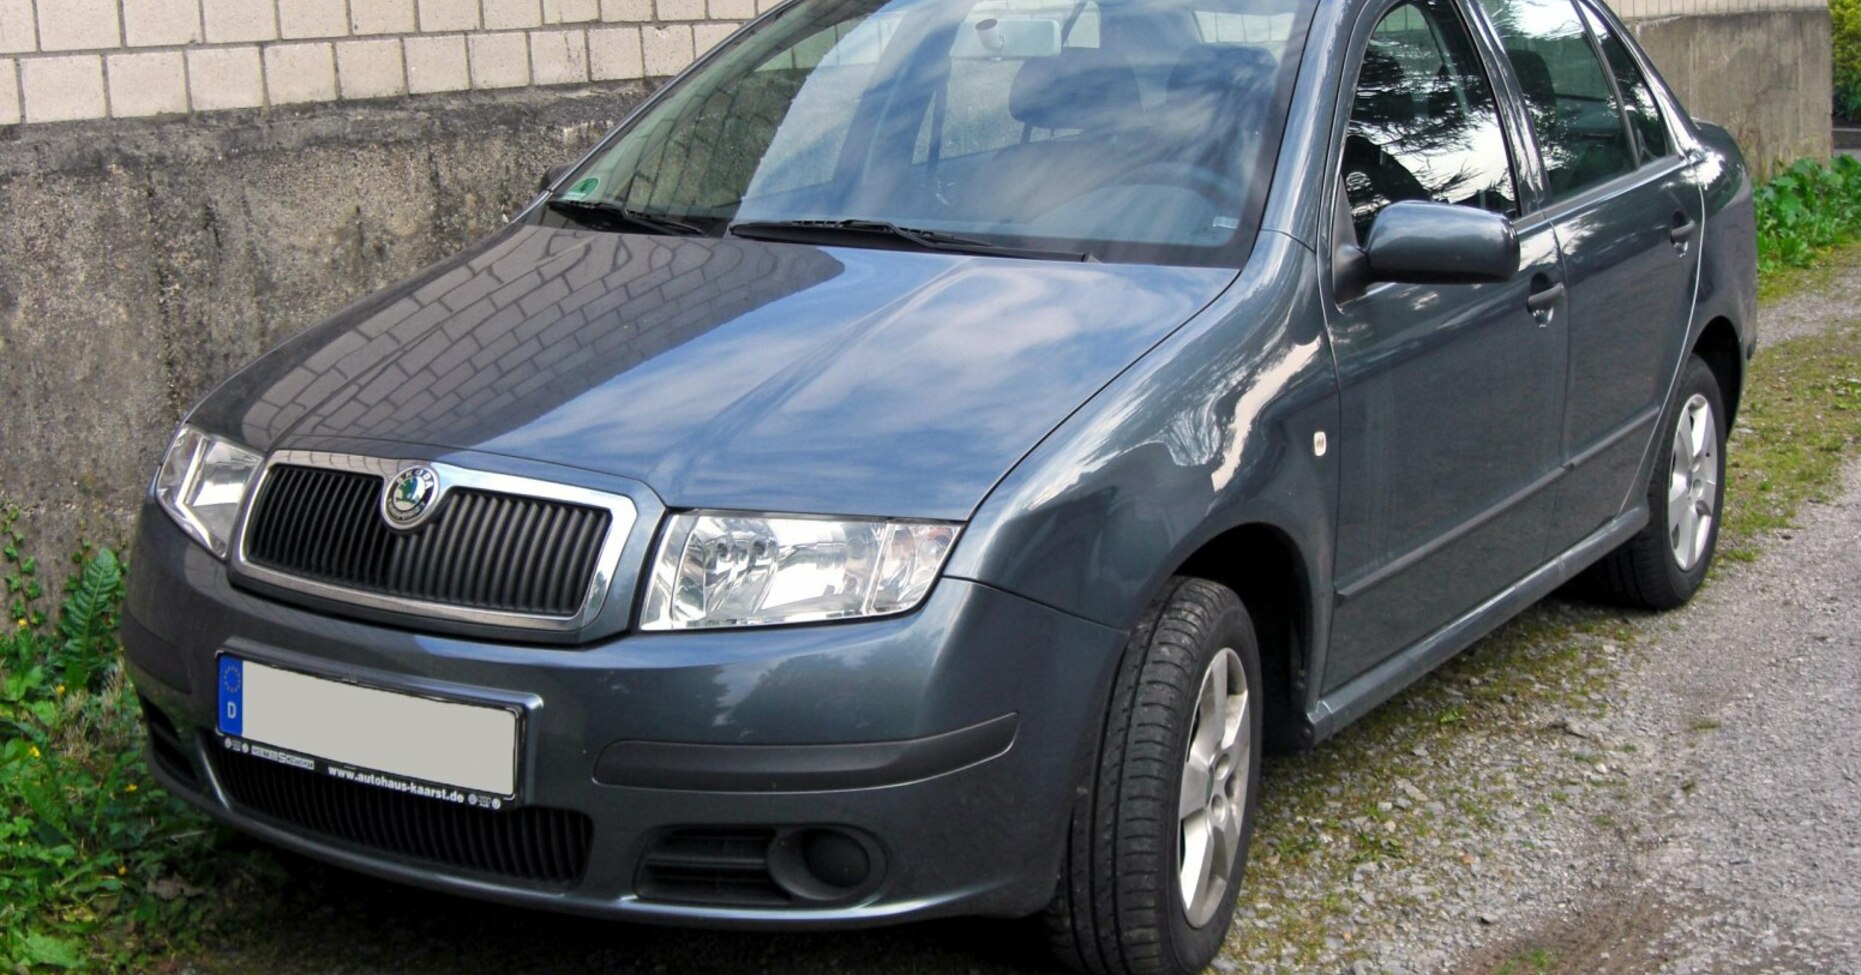 Skoda Fabia Sedan I (6Y, facelift 2004) 1.4 (75 Hp) Automatic 2004, 2005, 2006, 2007